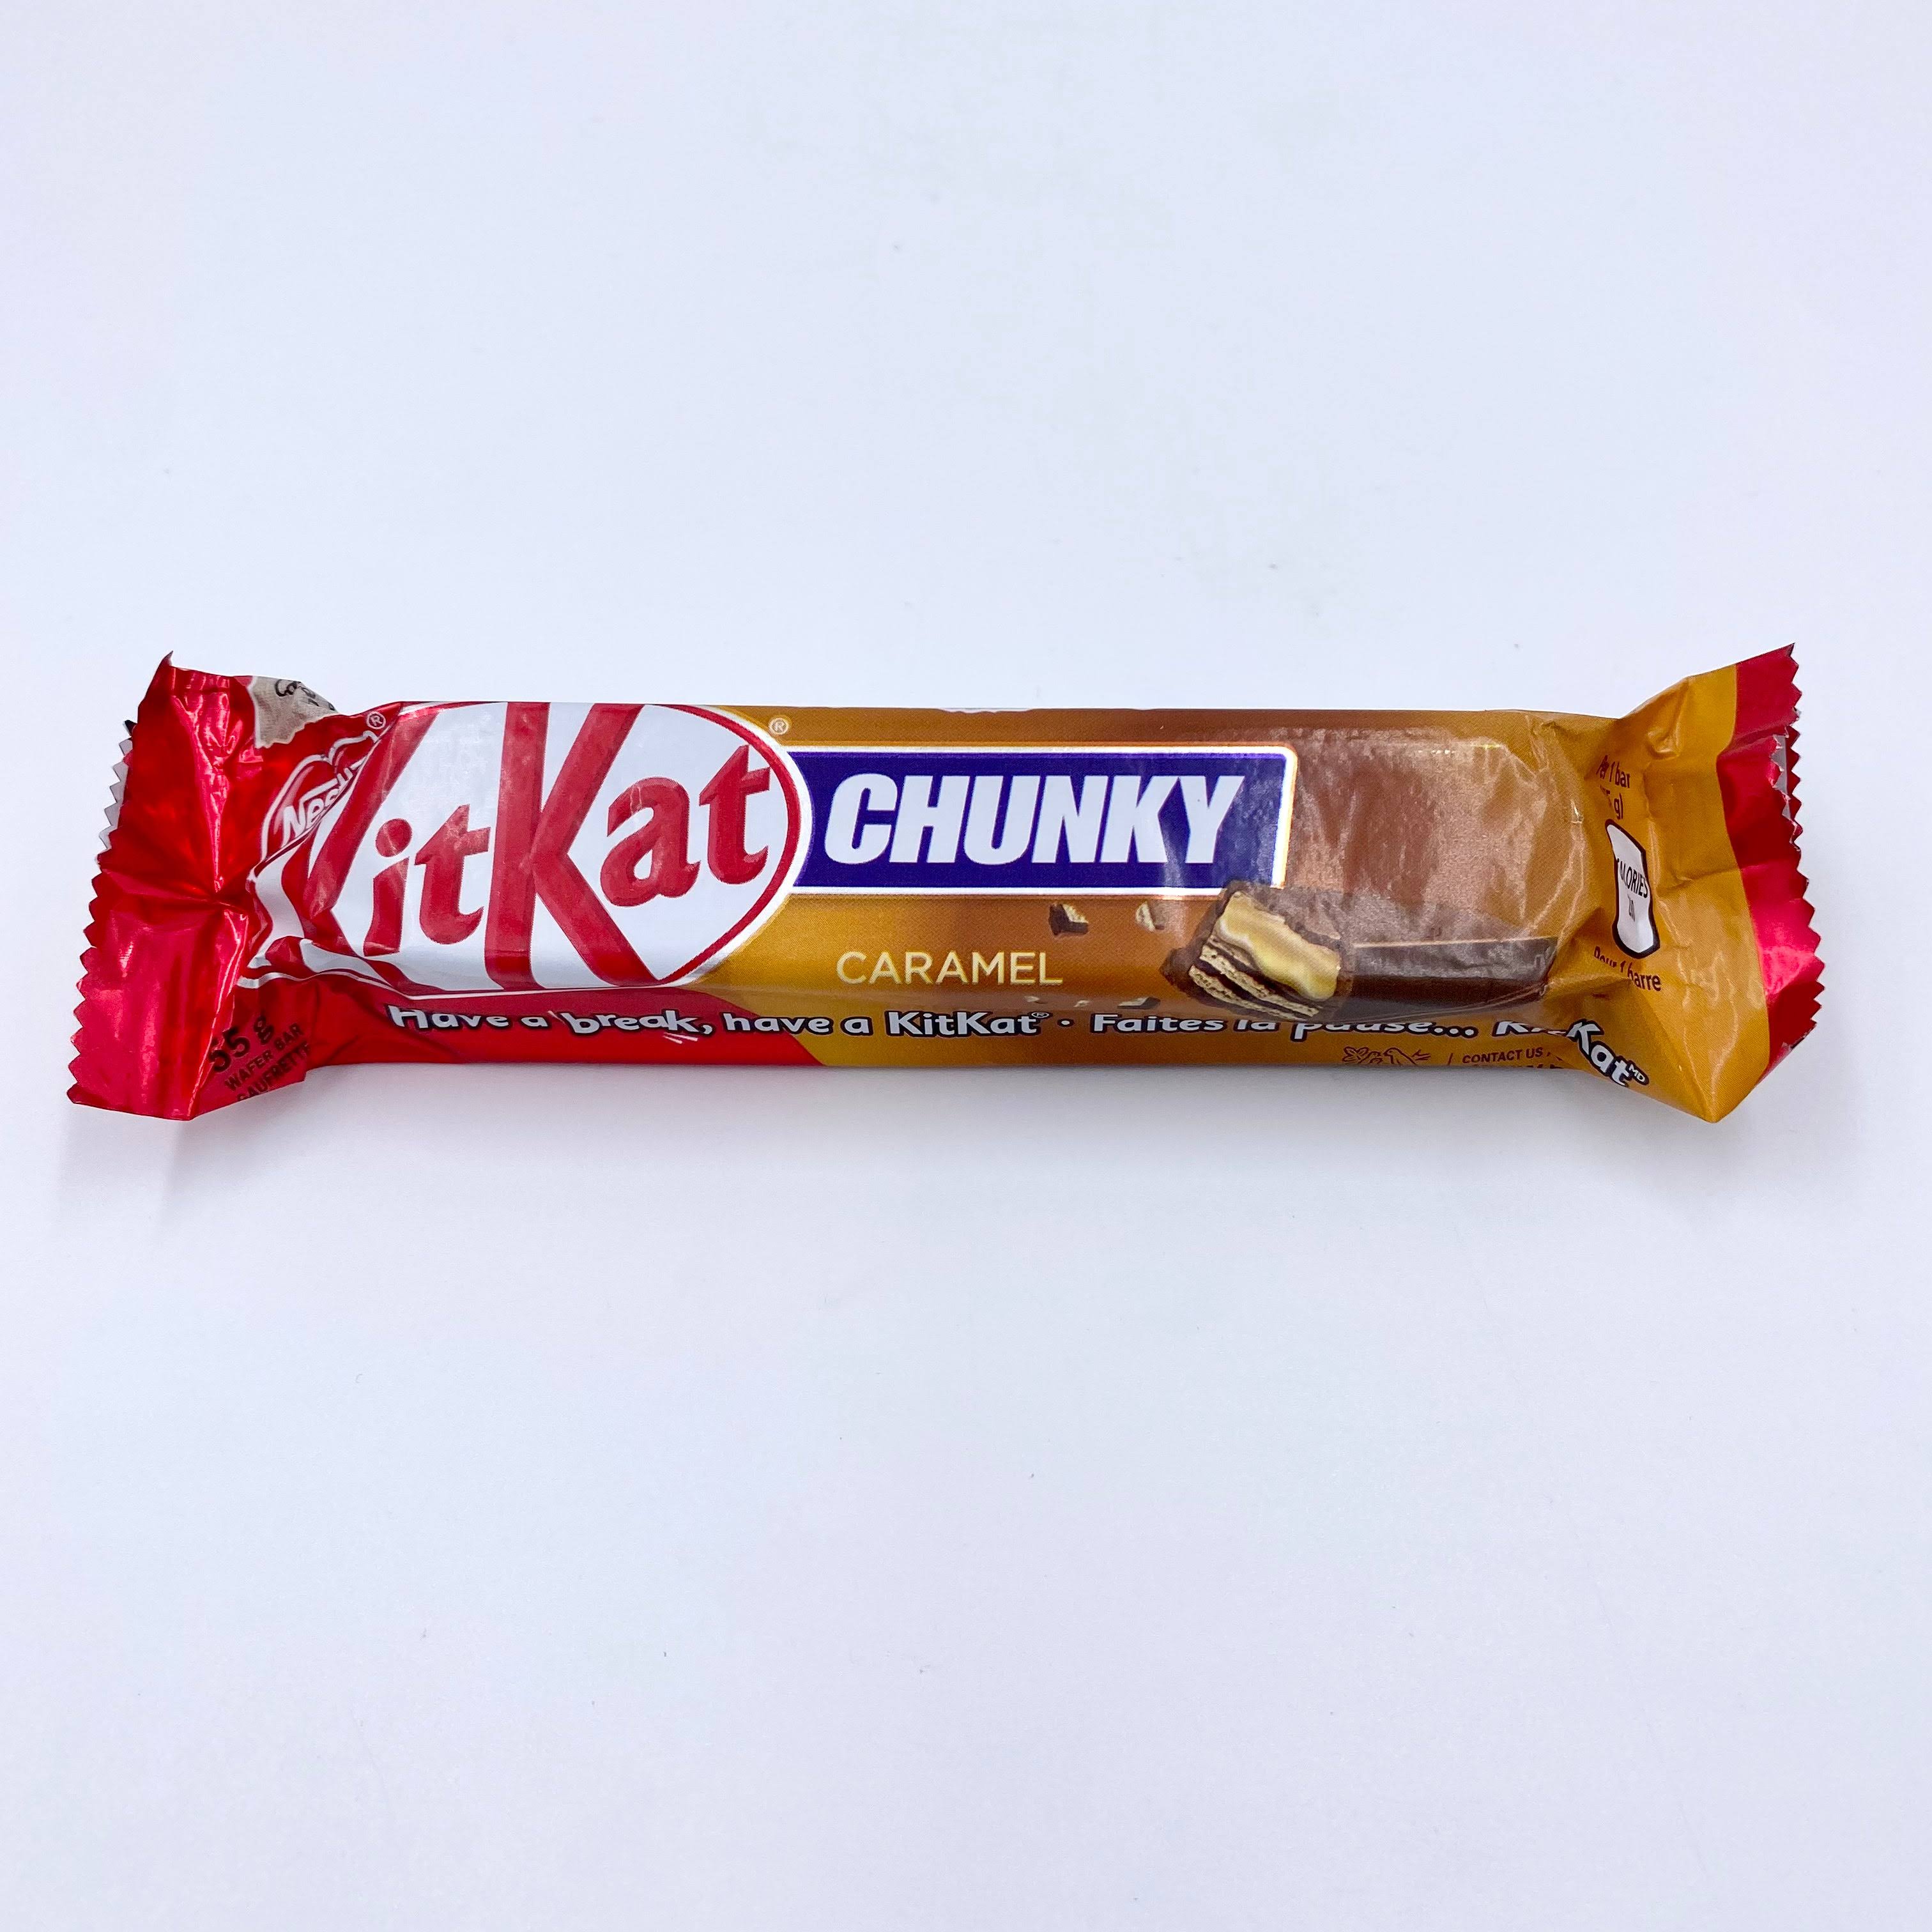 Kit Kat Chunky Caramel (Canada)